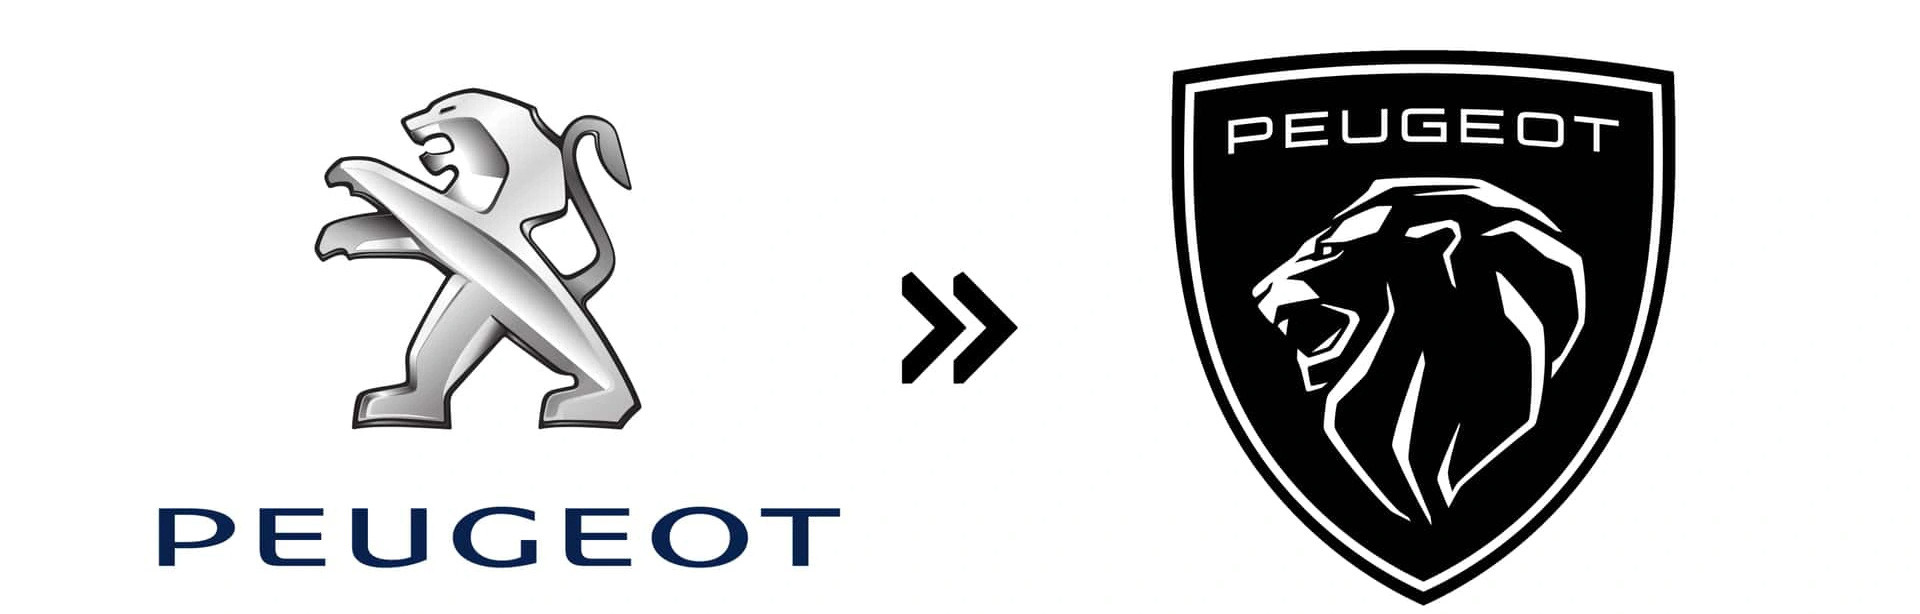 Peugeot (2021): Một trong những biểu tượng nổi bật nhất của làng xe tới từ Peugeot đã được làm lại vào đầu thập kỷ này. Hình sư tử đứng nay được thay bằng hình khiên, bên trong là đầu sư tử dữ dằn. Dòng chữ Peugeot được chuyển từ dưới lên trên biểu tượng chính - Ảnh: Motor1